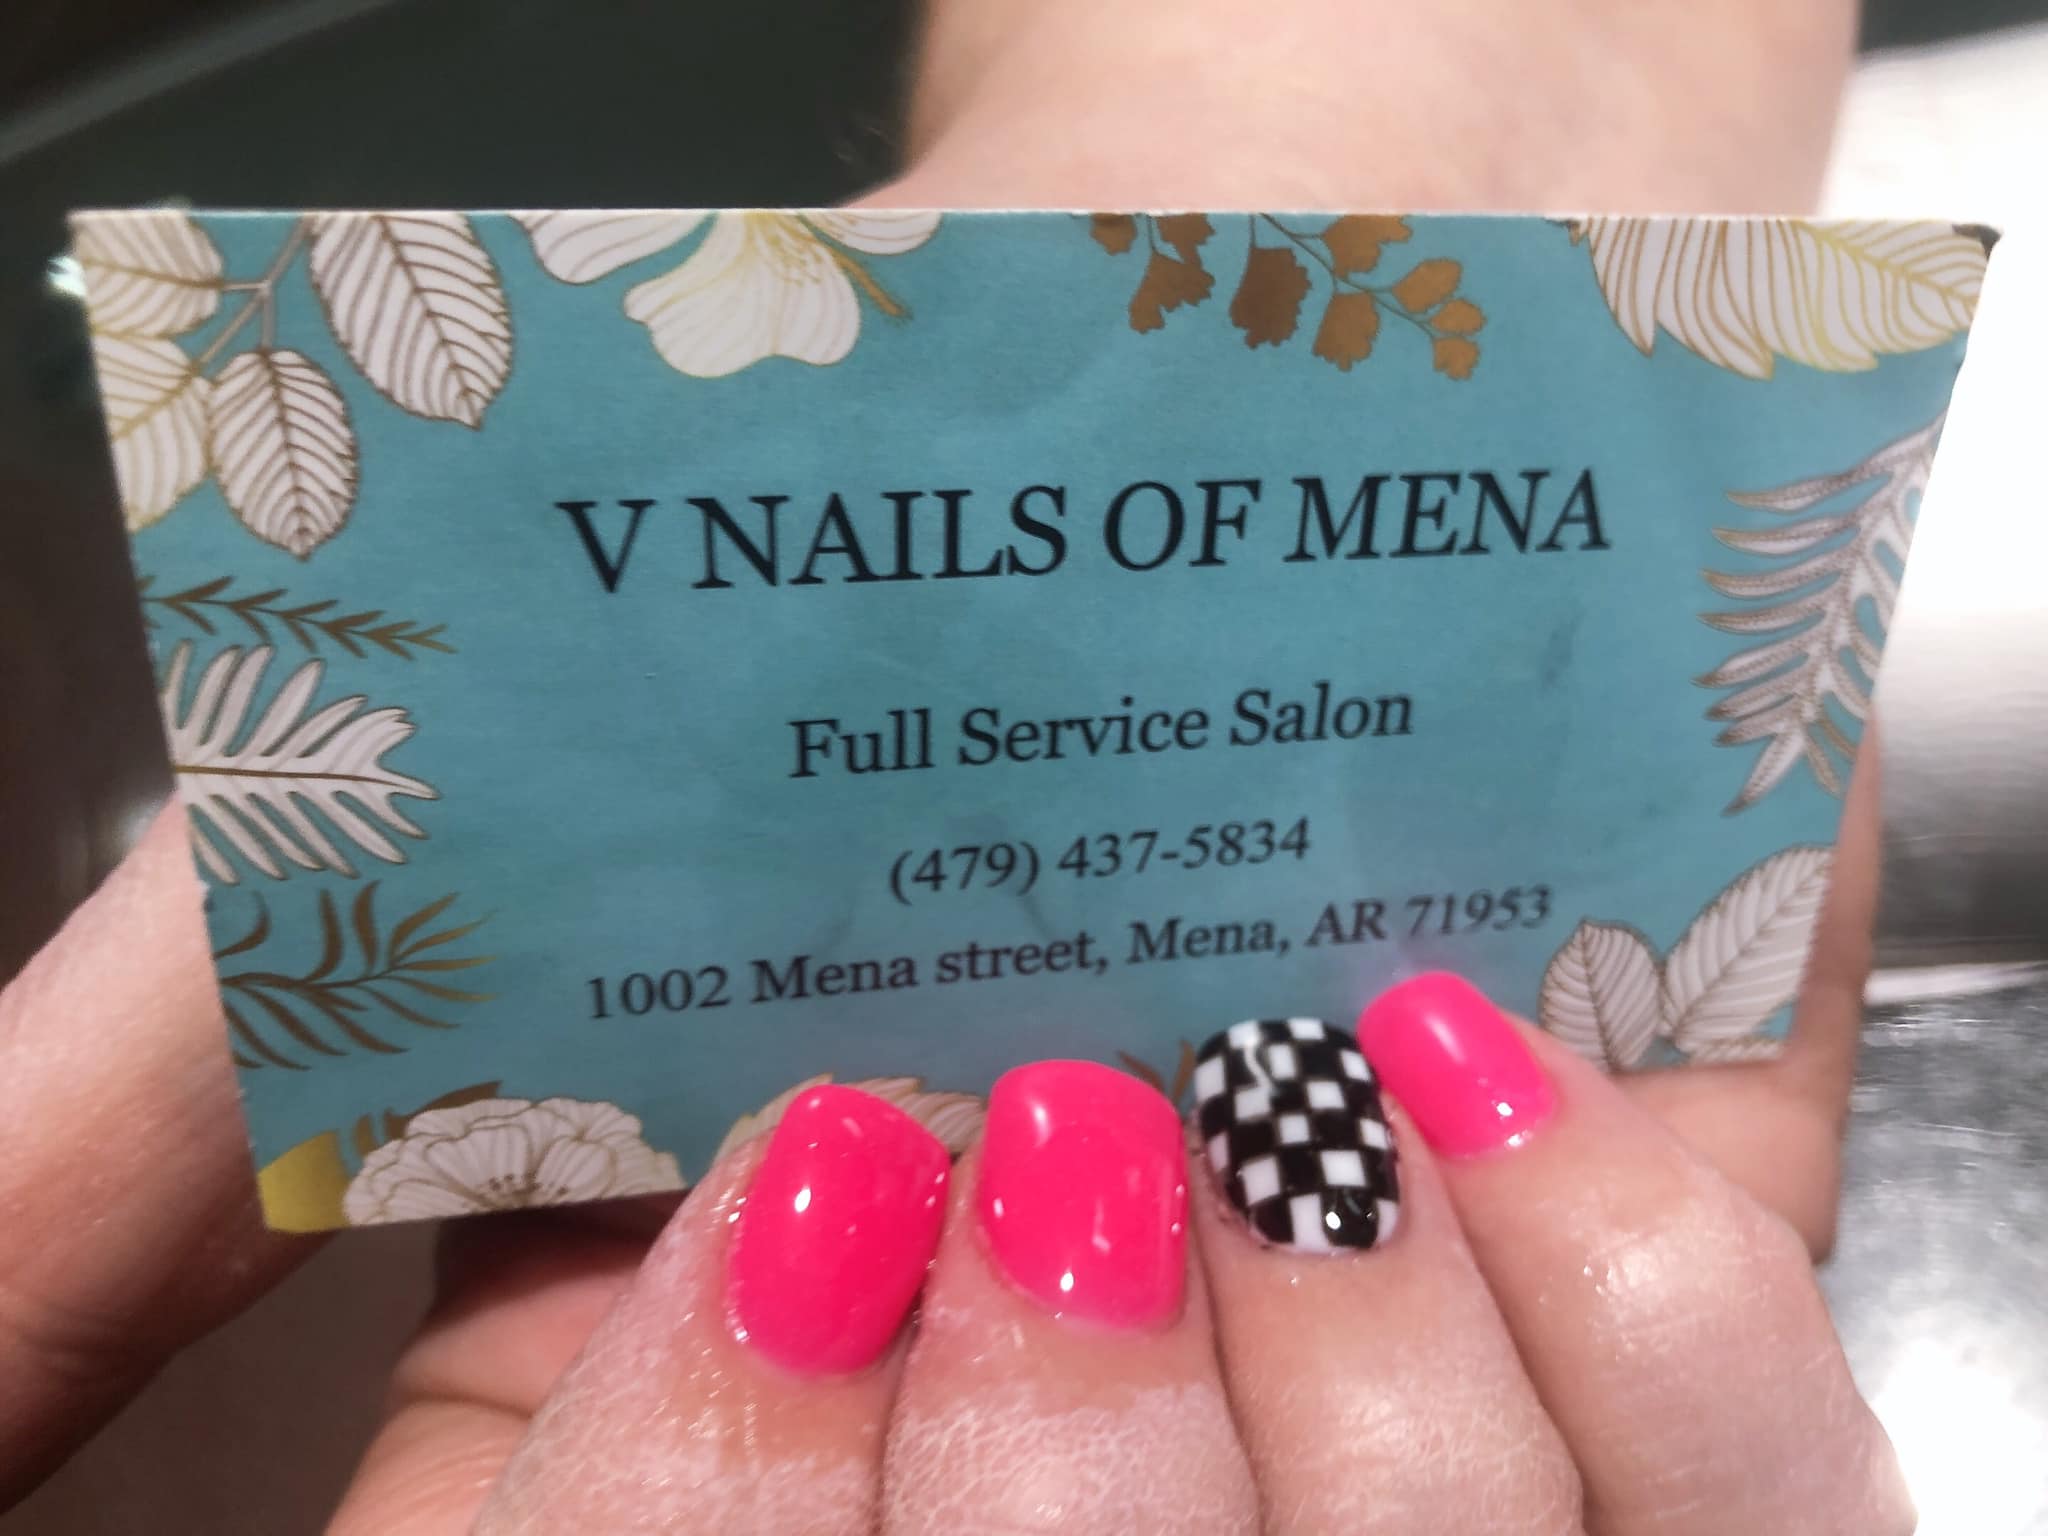 V Nails, Mena- Full Service Salon 1002 Mena St, Mena Arkansas 71953